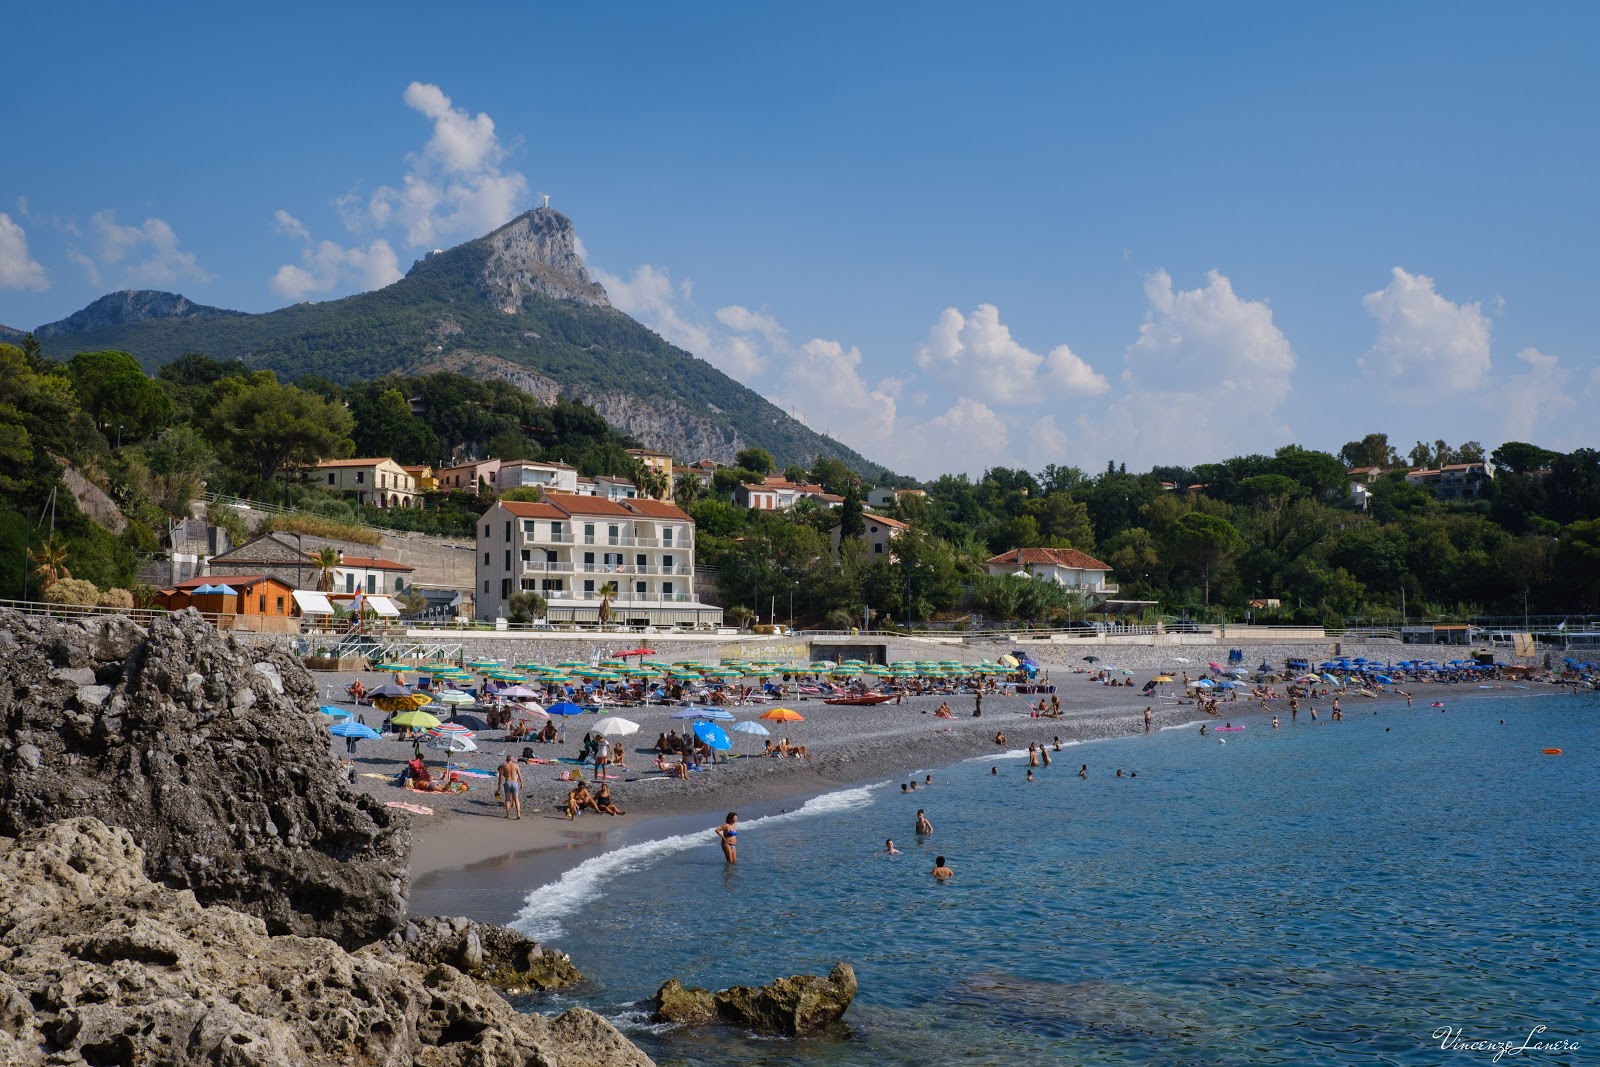 Foto de Spiaggia di Fiumicello - lugar popular entre os apreciadores de relaxamento